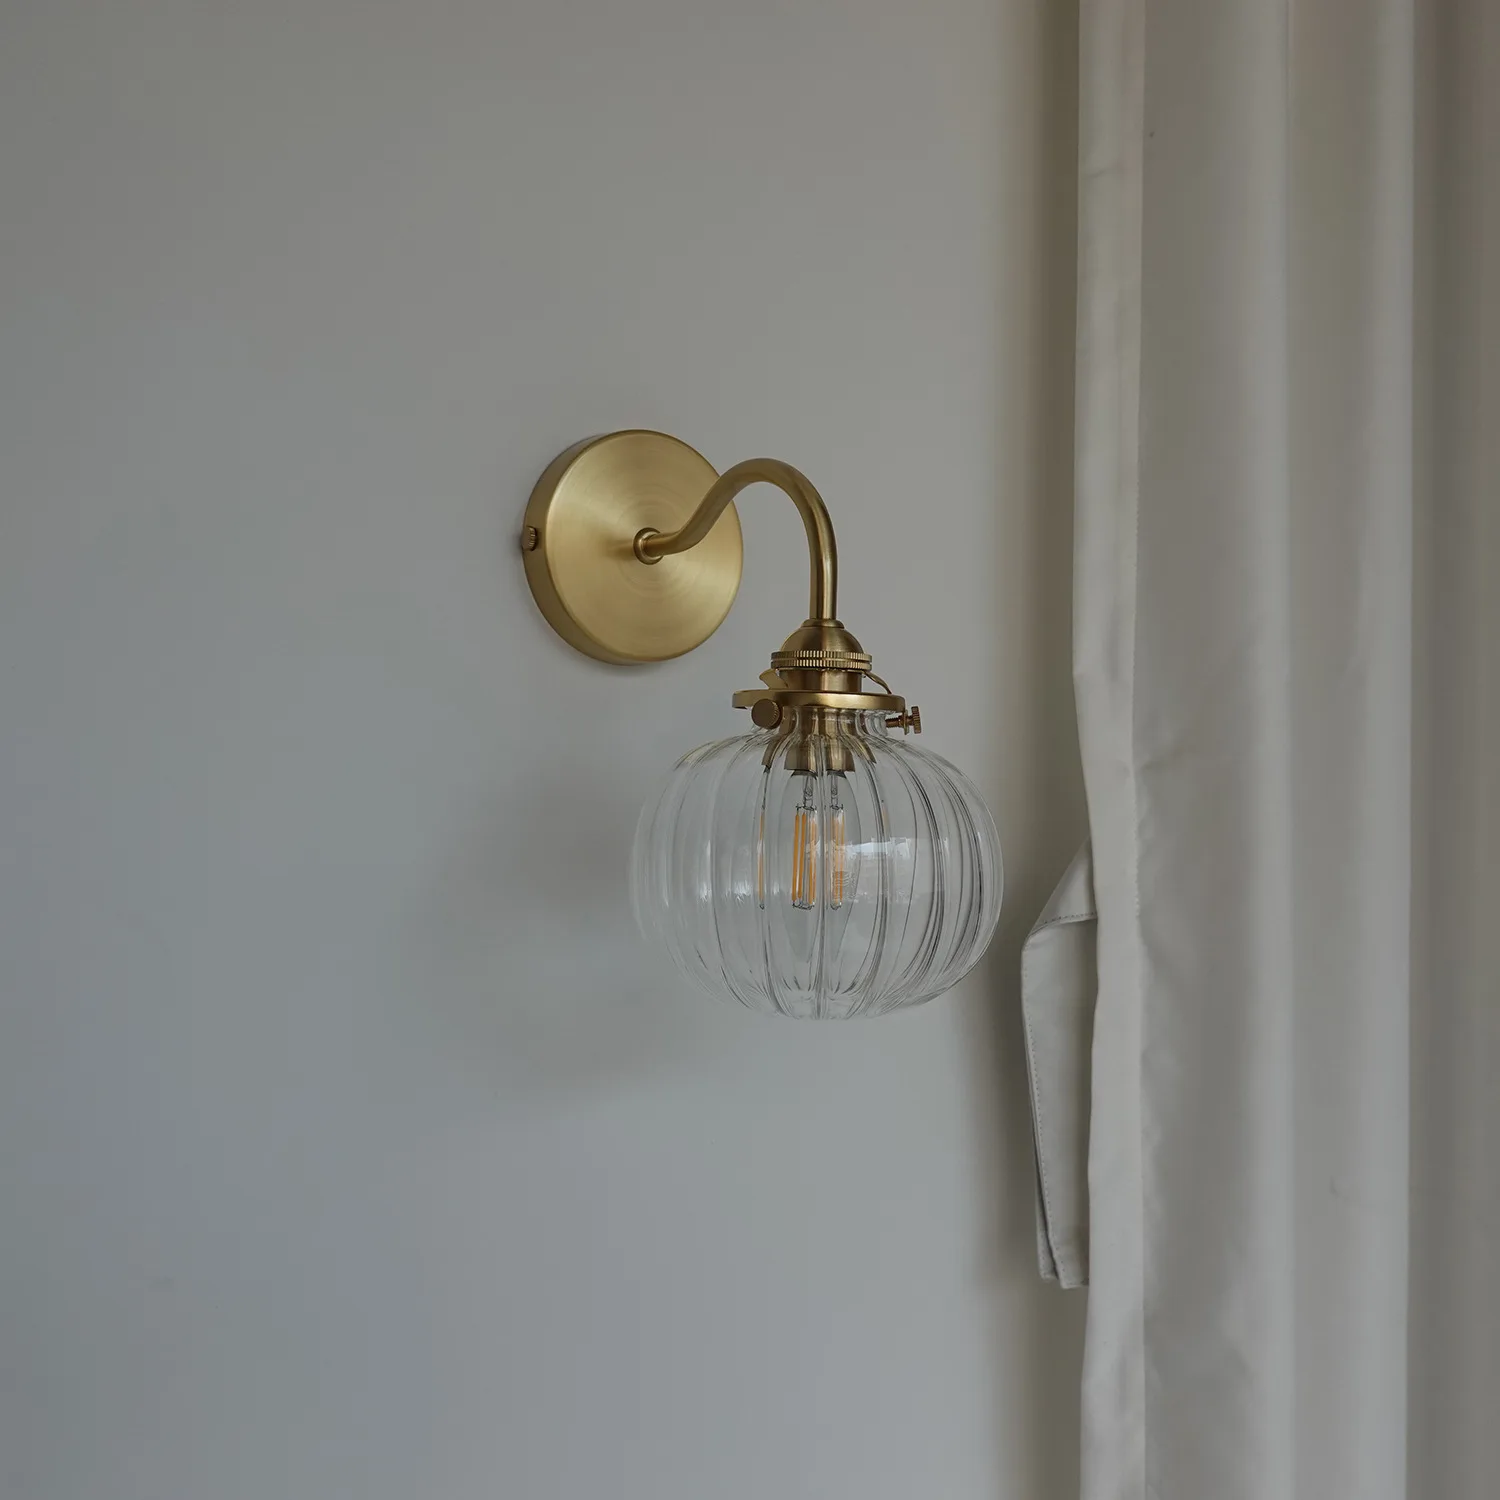 Iwhd pouco bola de vidro conduziu a luz da parede luminárias plug in switch quarto espelho do banheiro escada arandela cobre moderno nórdico